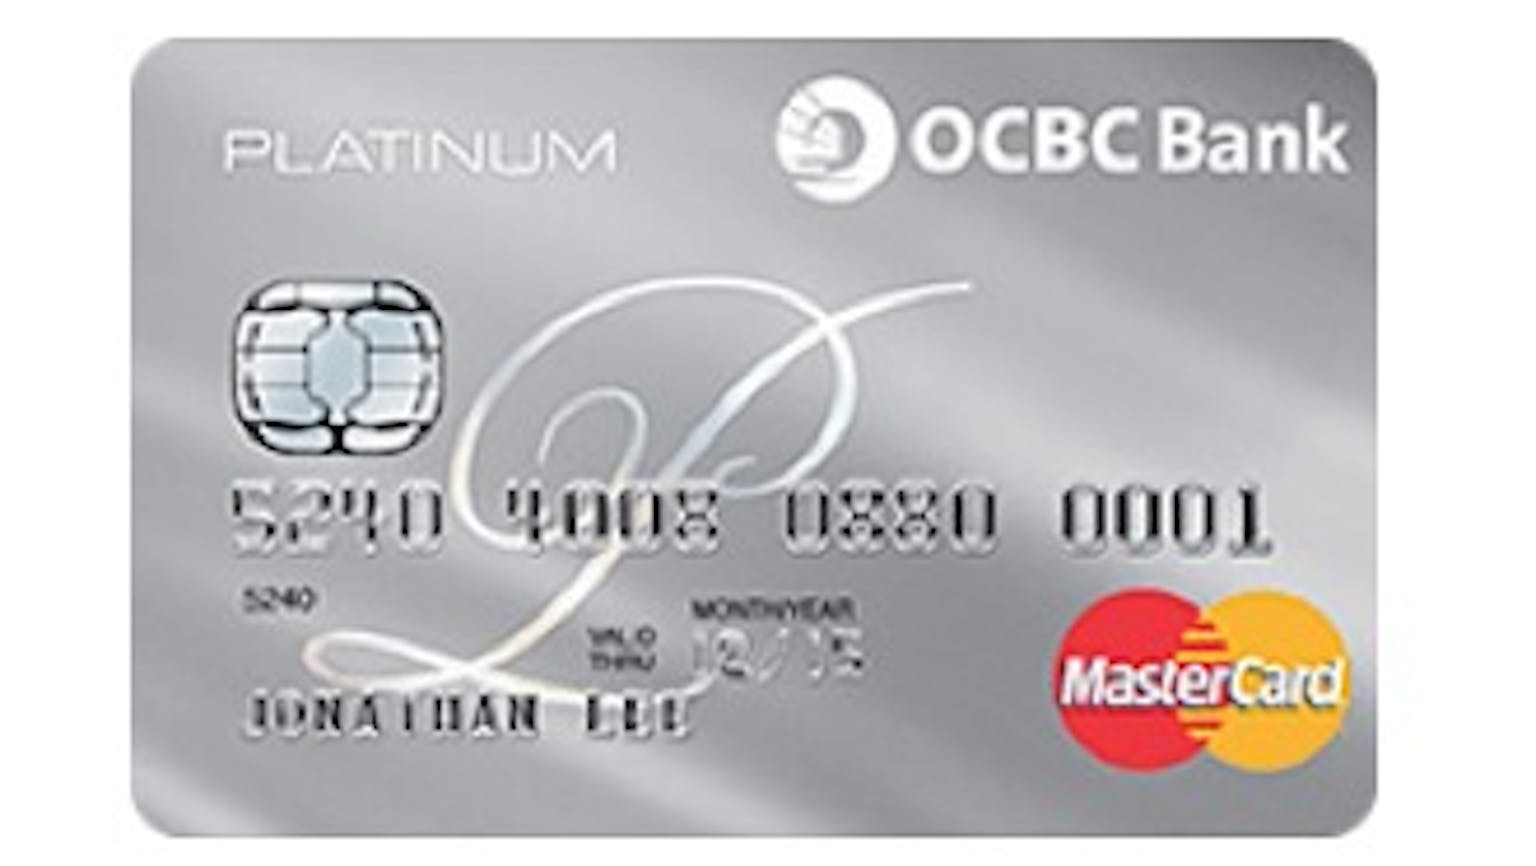 OCBC Platinum Credit Card